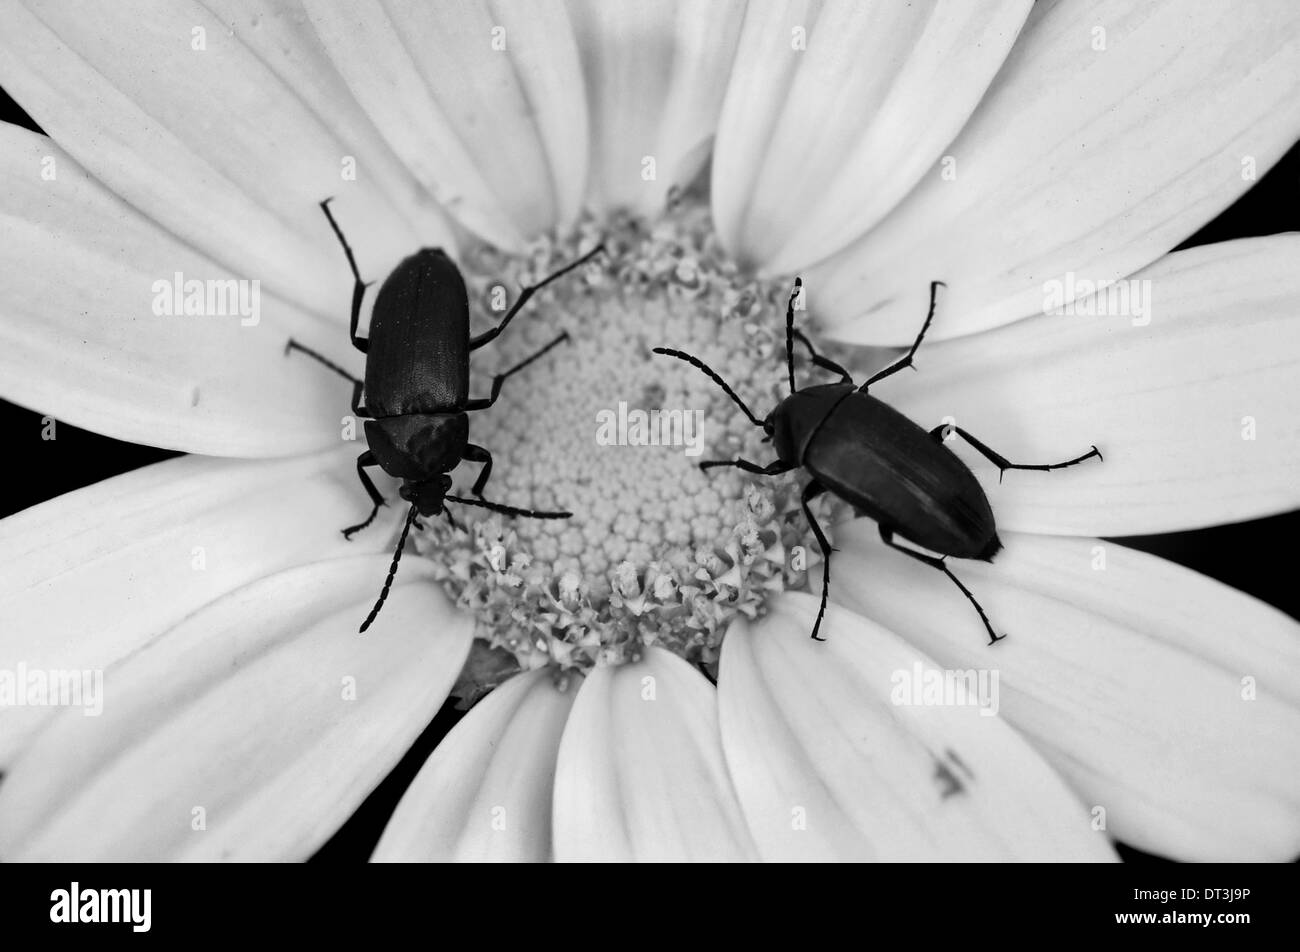 Deux petits coléoptères sur une fleur en fleur. Noir et blanc. Banque D'Images